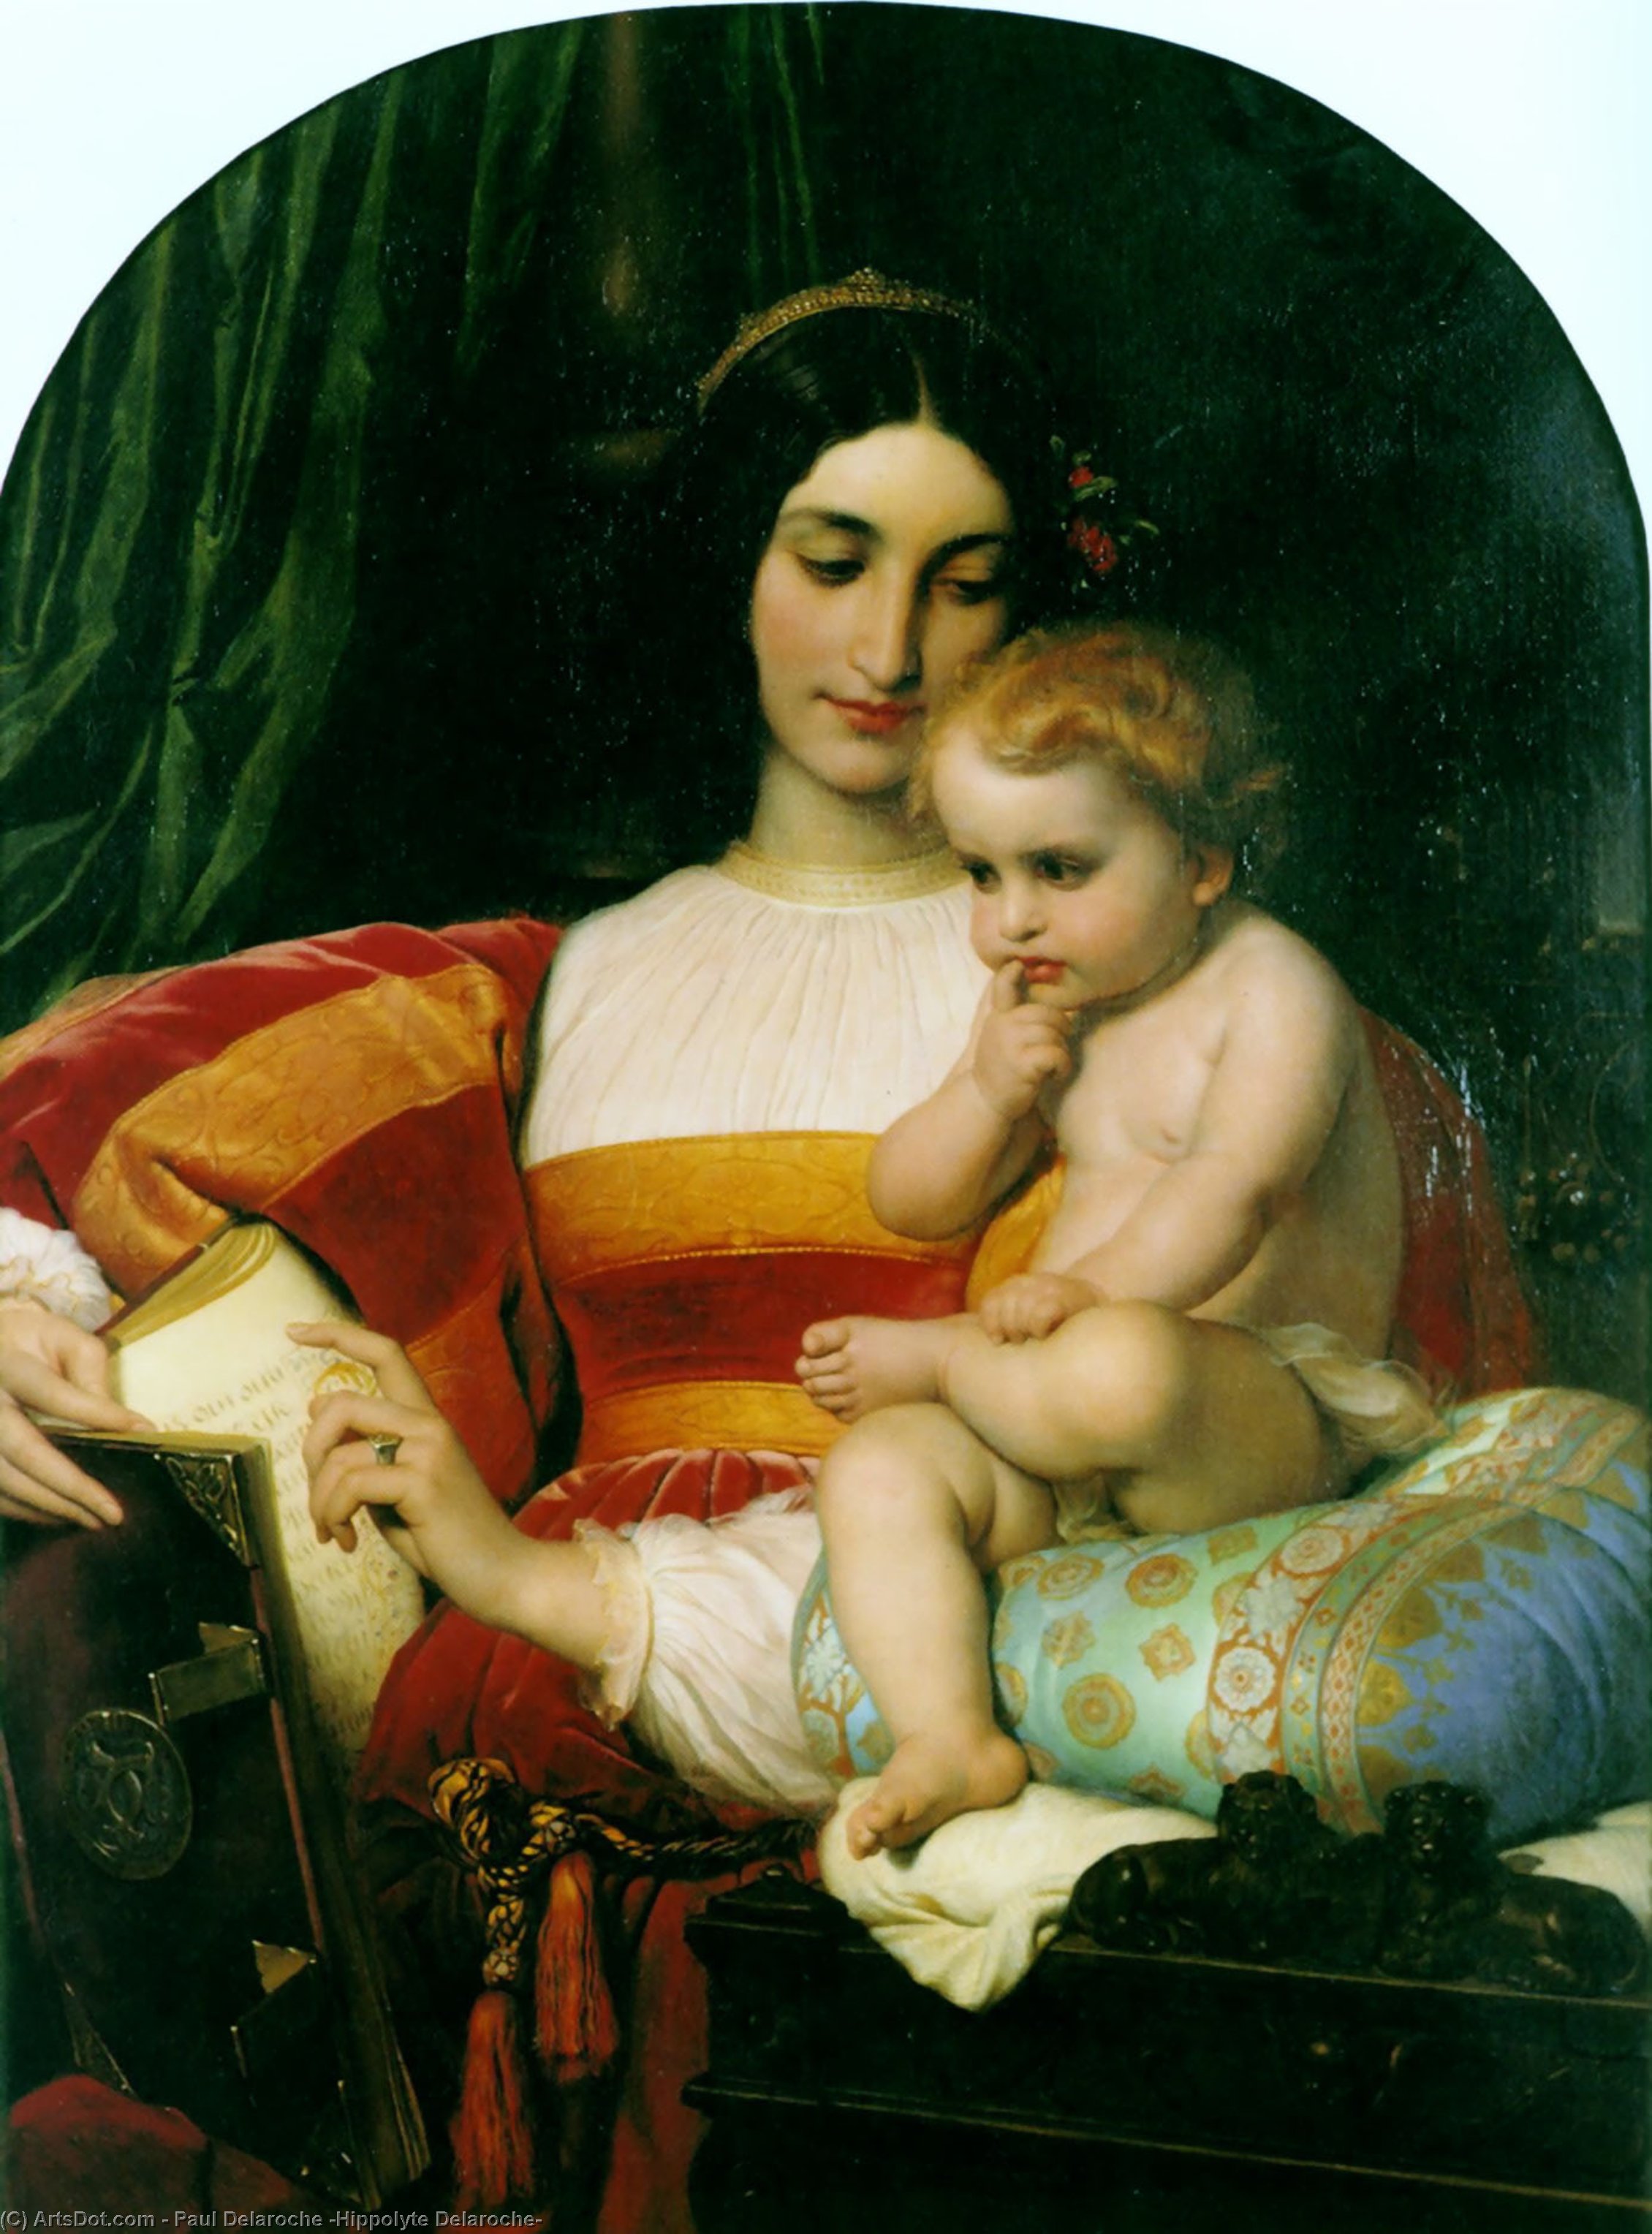 WikiOO.org - Encyclopedia of Fine Arts - Lukisan, Artwork Paul Delaroche (Hippolyte Delaroche) - The Childhood of Pico della Mirandola